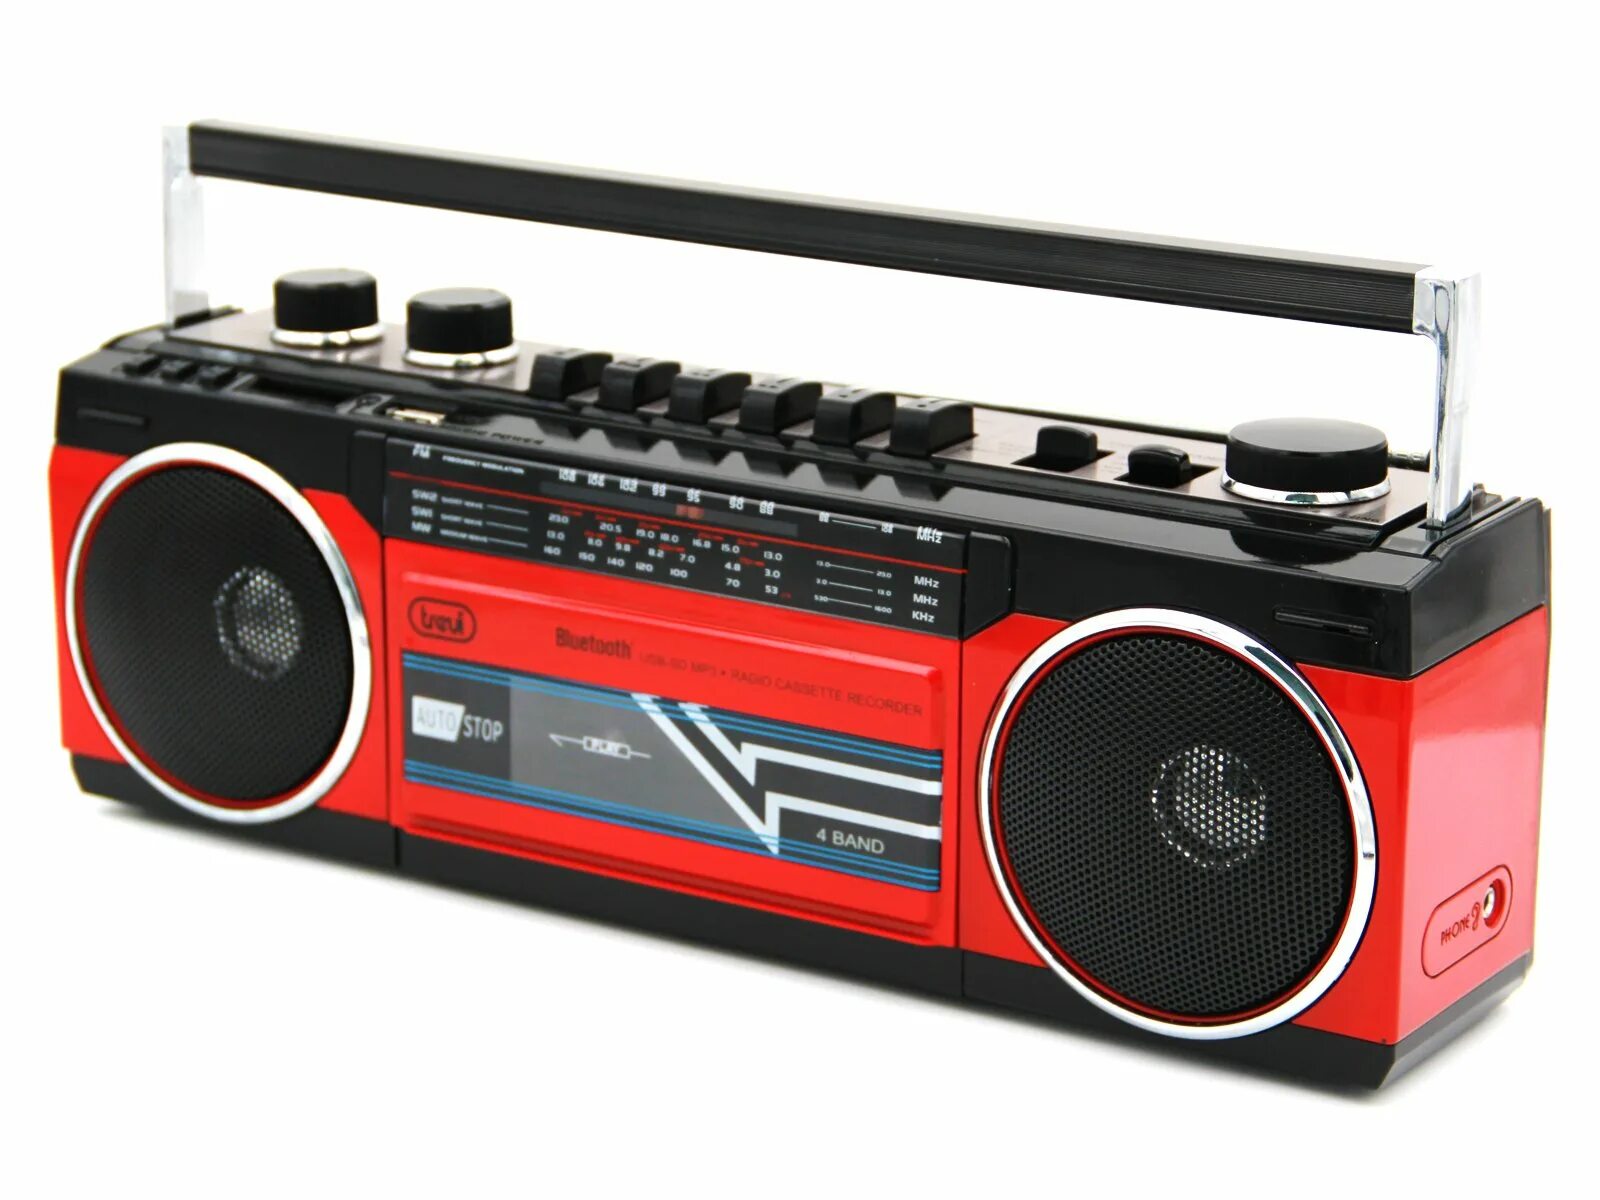 Ретро-магнитофон Roadstar RCR-3025bl. Ретро-магнитофон Roadstar RCR-3025bk, черный. Магнитофон в ретро стиле Roadstar RCR-3025ebt. Boombox магнитофон. Ретро магнитофон